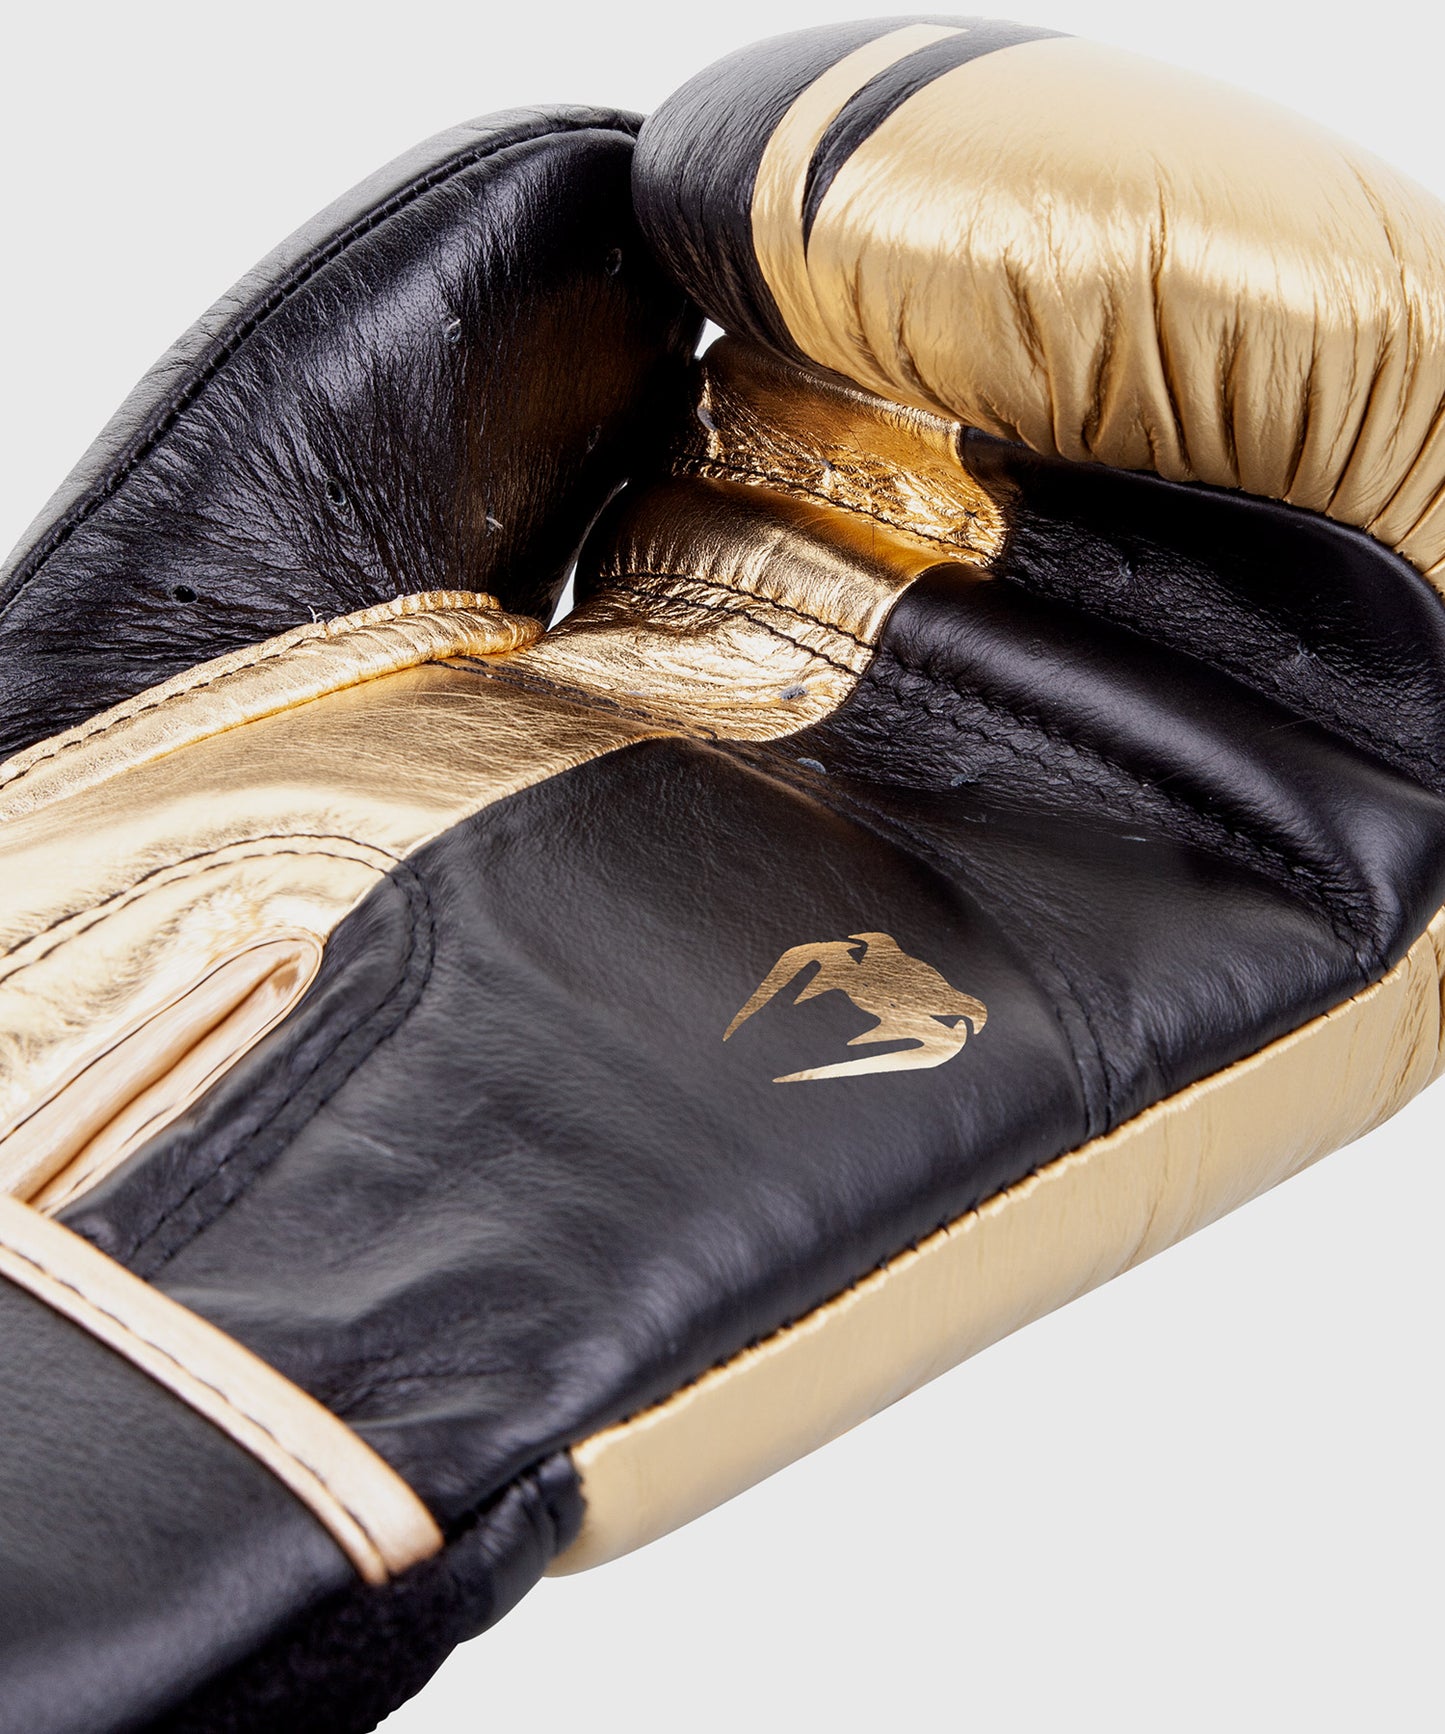 Боксерские перчатки Venum Shield pro с липучкой - черный/золотой